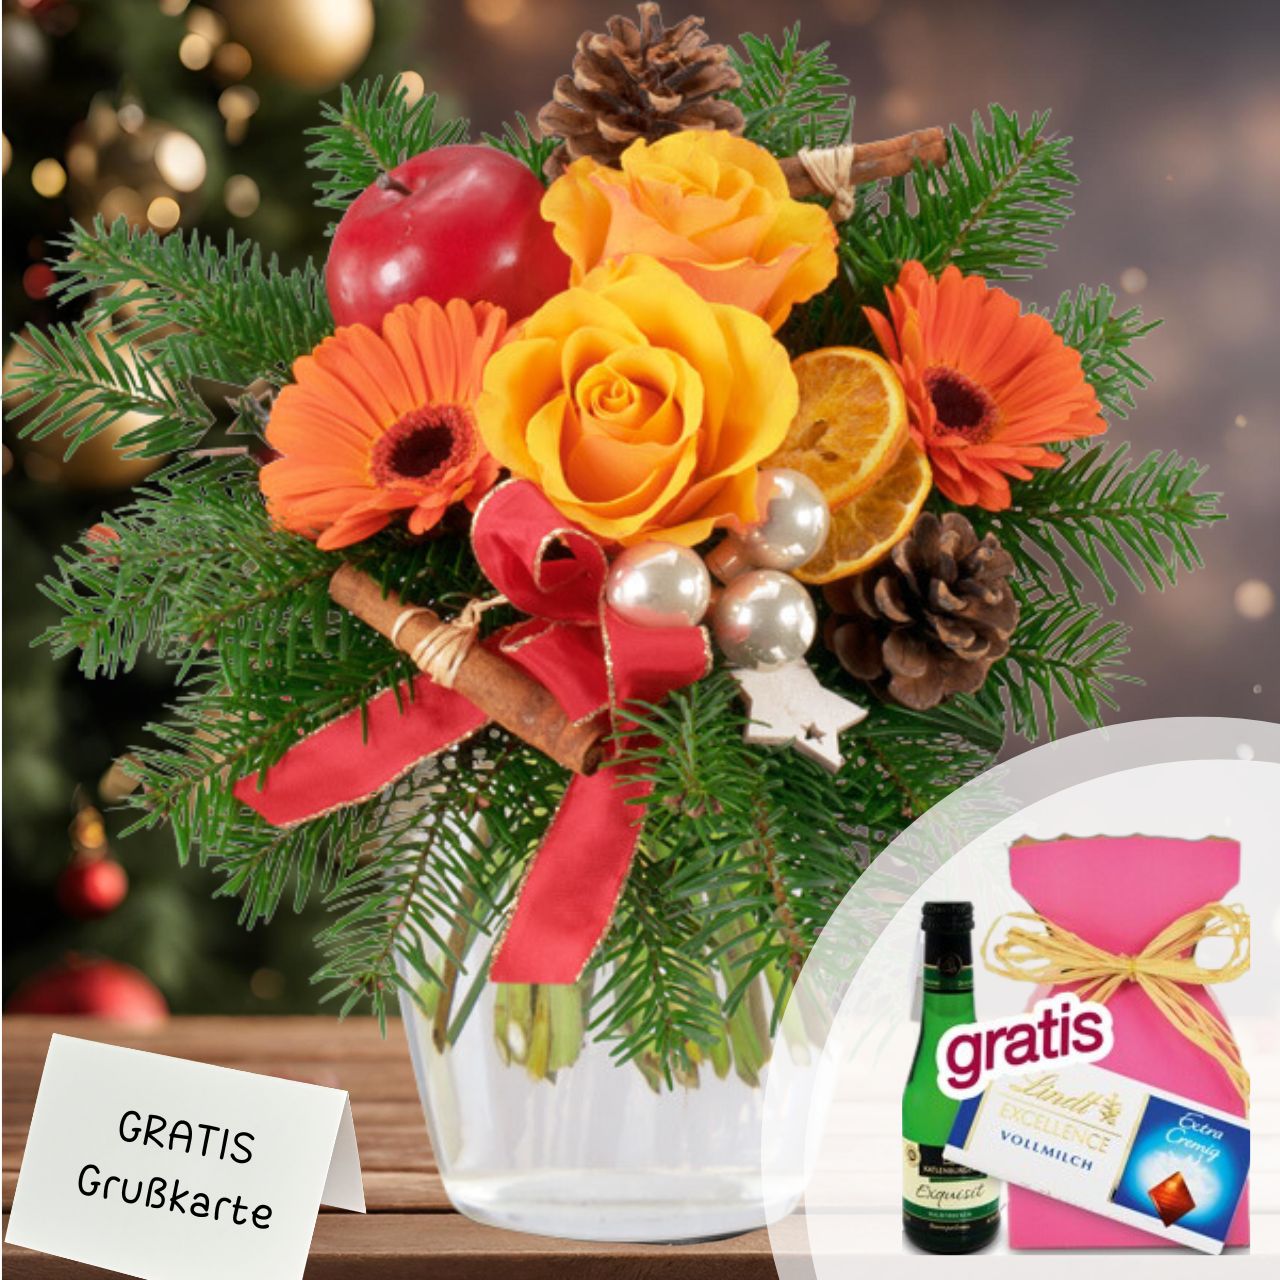 Kleiner Weihnachtsgruss zur Adventszeit: Ein farbenfroher Strauss in Orange